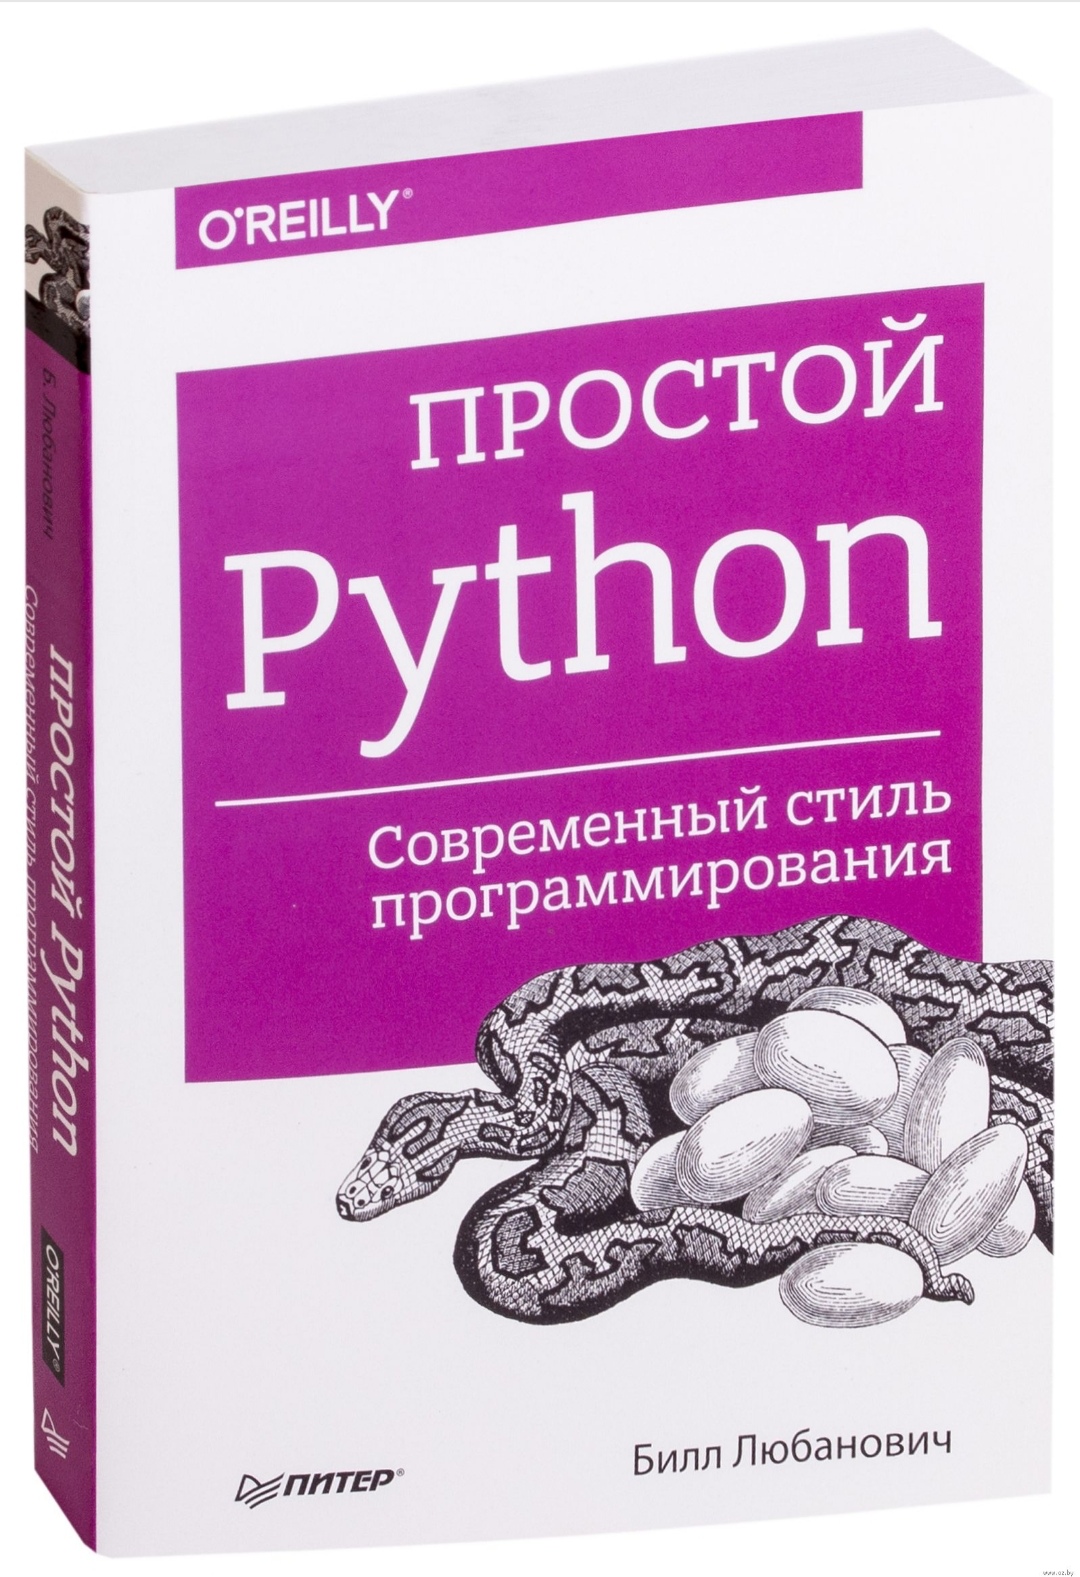 Питон книга программирование. Питон программирование. Лучшие книги по Python. Книги для изучени еpyhton. Программирование на питон книга.